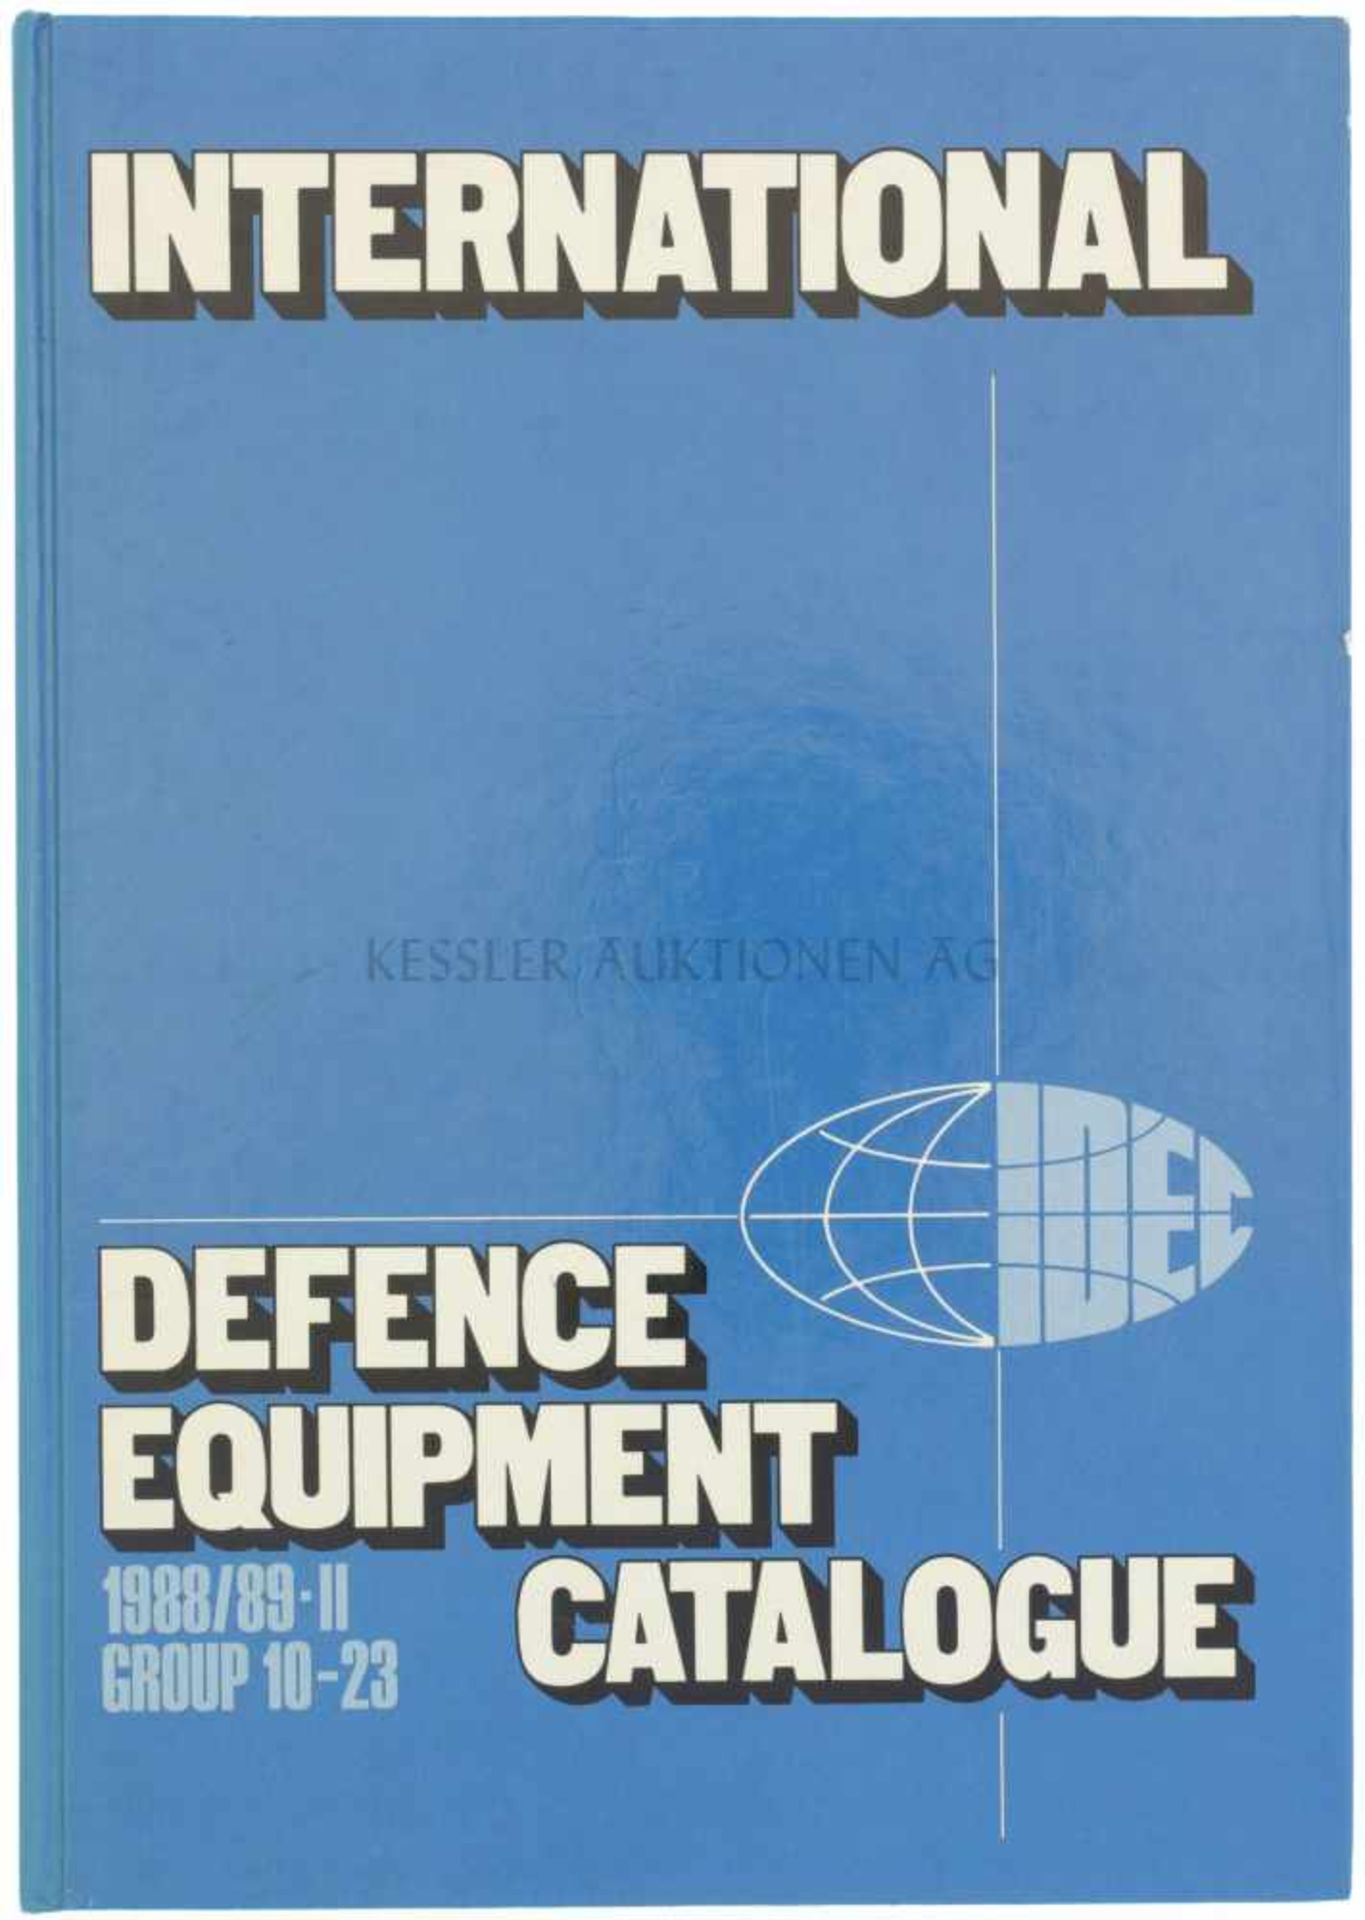 International Defence Equipment Catalogue, 1988/89-II, Group 10-23 Volume 2, 1988, 461 Seiten mit